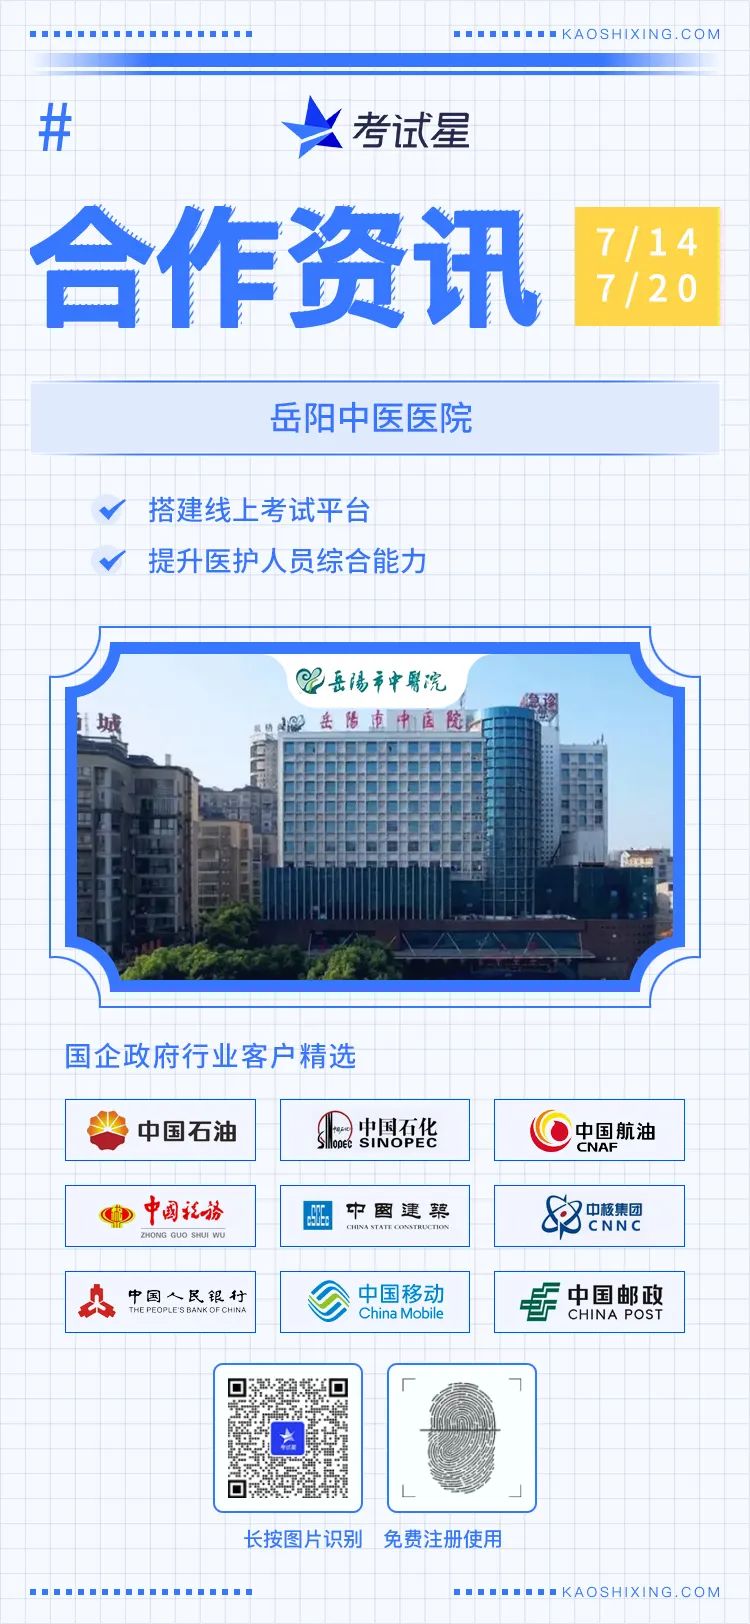 岳阳中医医院-考试星线上考试平台